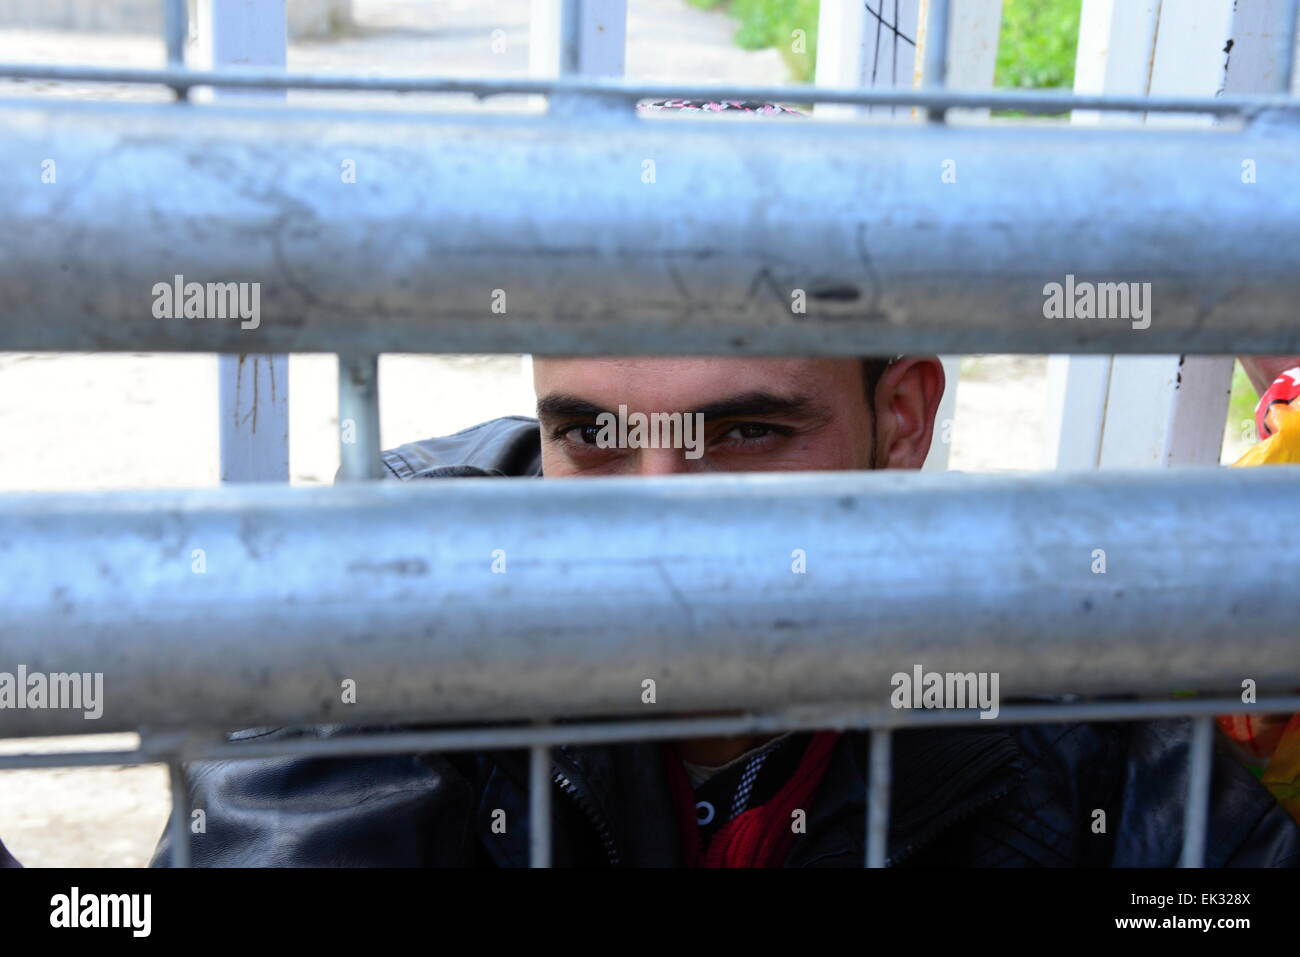 Porträt des Mannes, die islamischen Staat beitreten wollen. Jetzt wartet er für die Eingabe von Syrien in Akcakale Grenzstadt. 31.3.2015 Akcakale Stockfoto